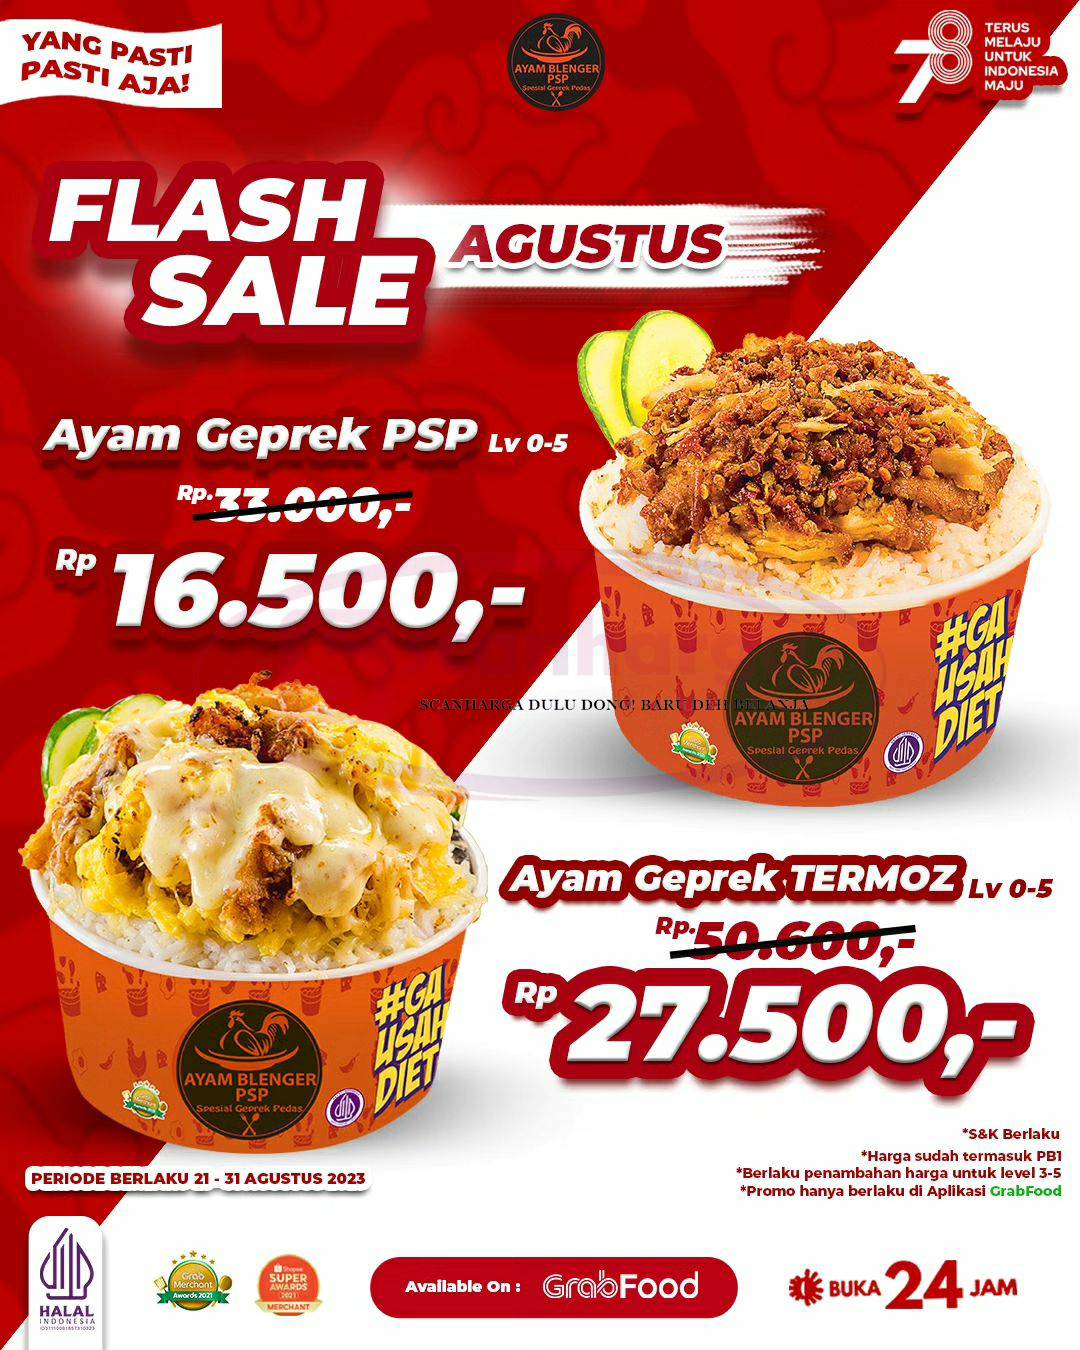 Promo Ayam Blenger PSP FLASH SALE Grabfood Periode 21-31 Agustus 2023